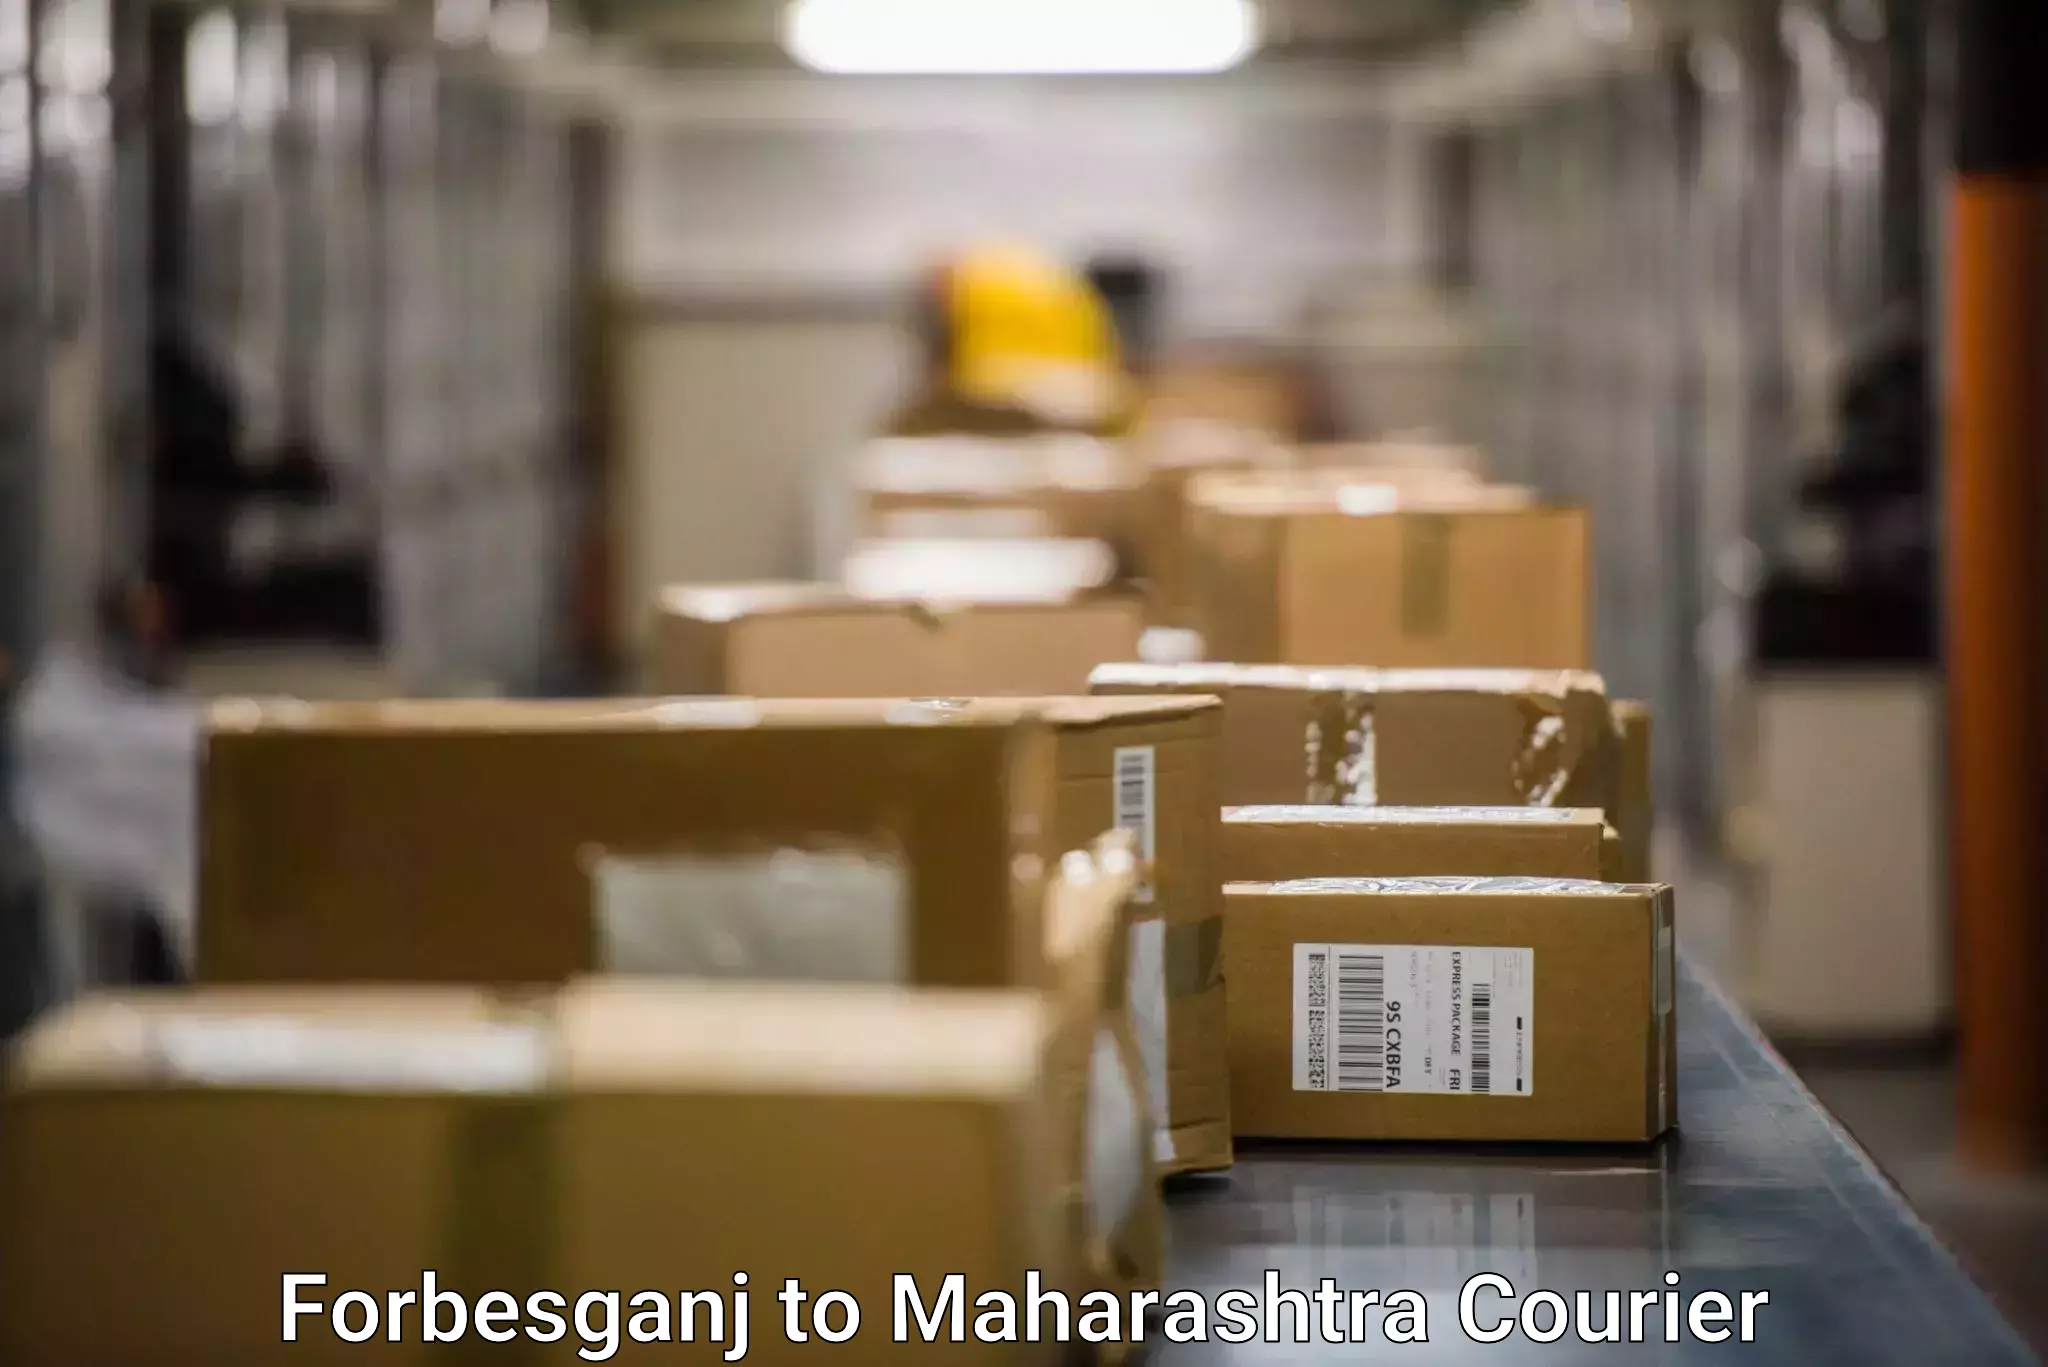 Package forwarding Forbesganj to Maharashtra